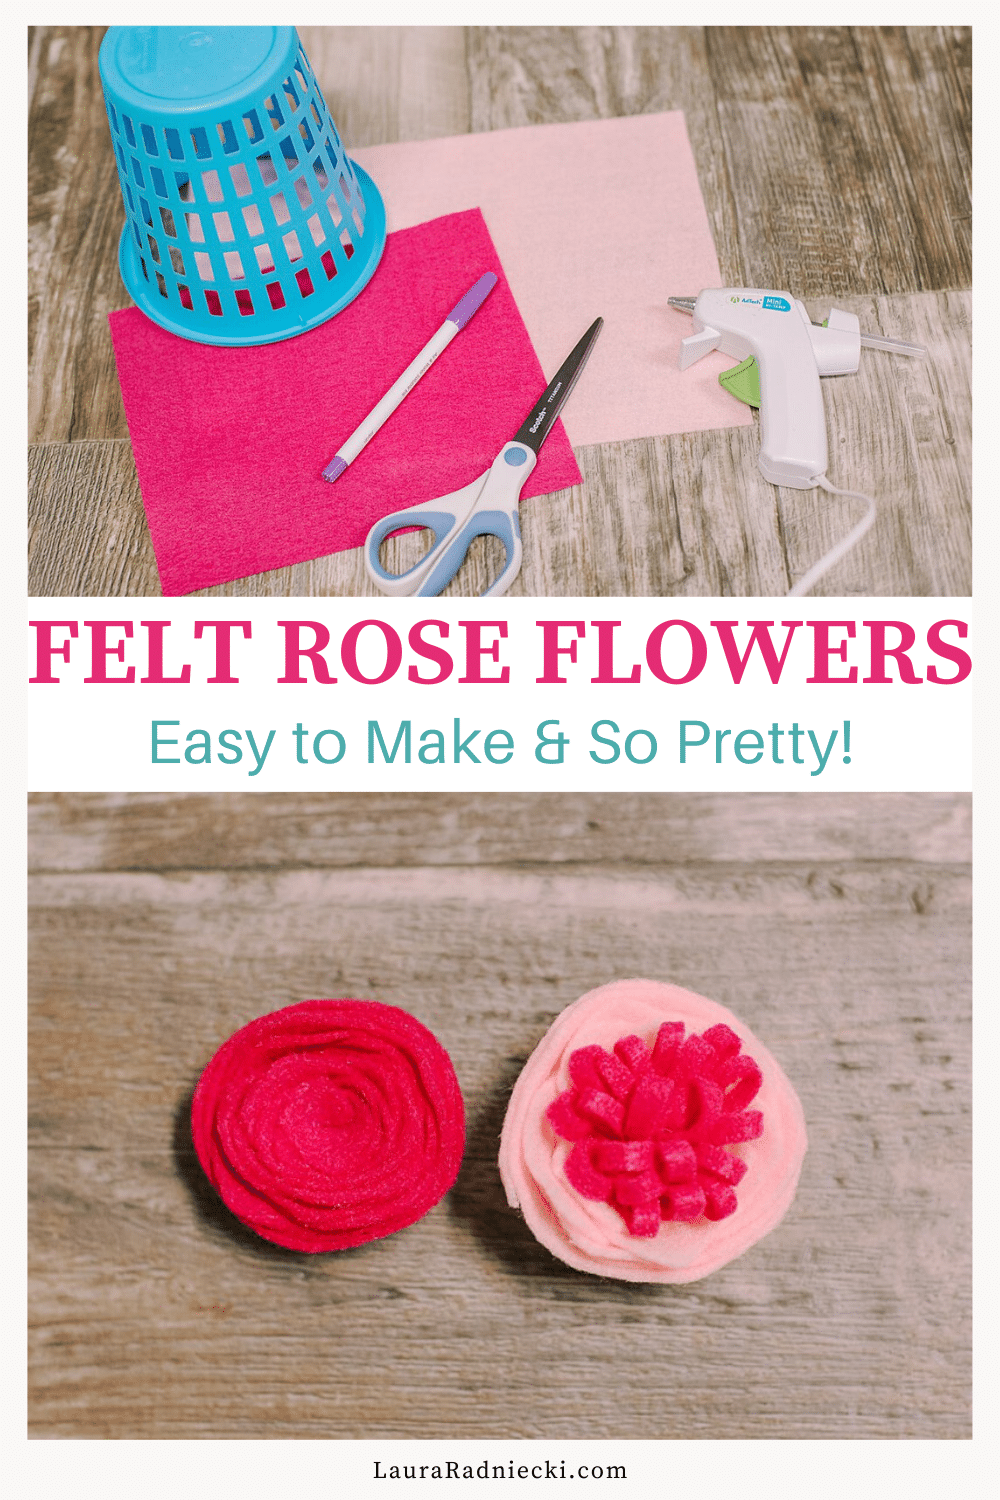 How to Make Felt Rose Flowers